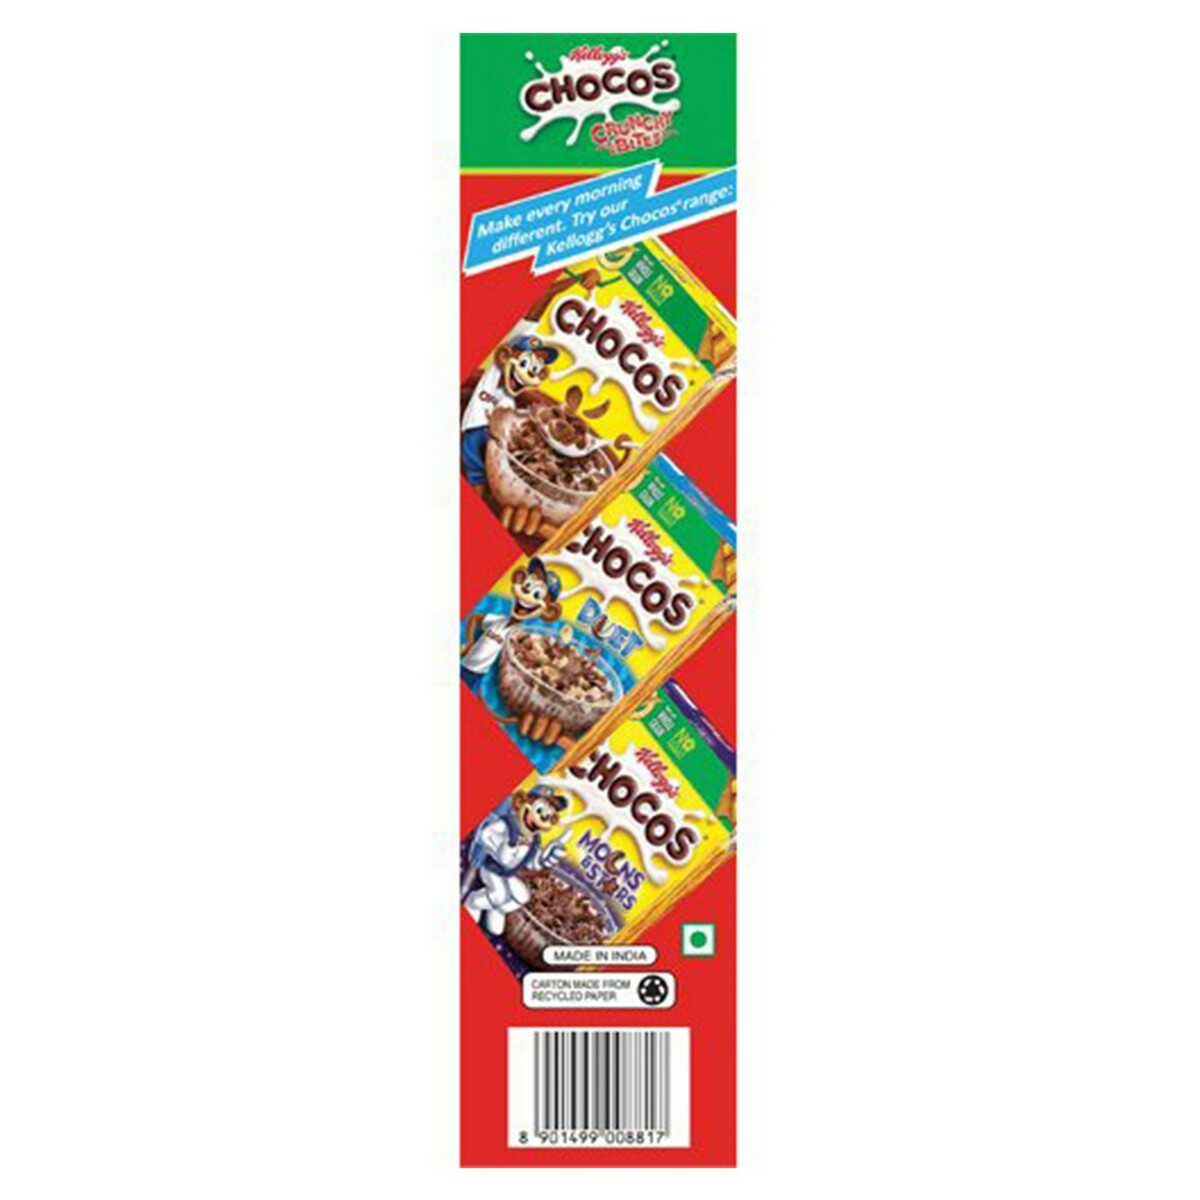 Kellogg's Chocos Crunchy Bites 375g